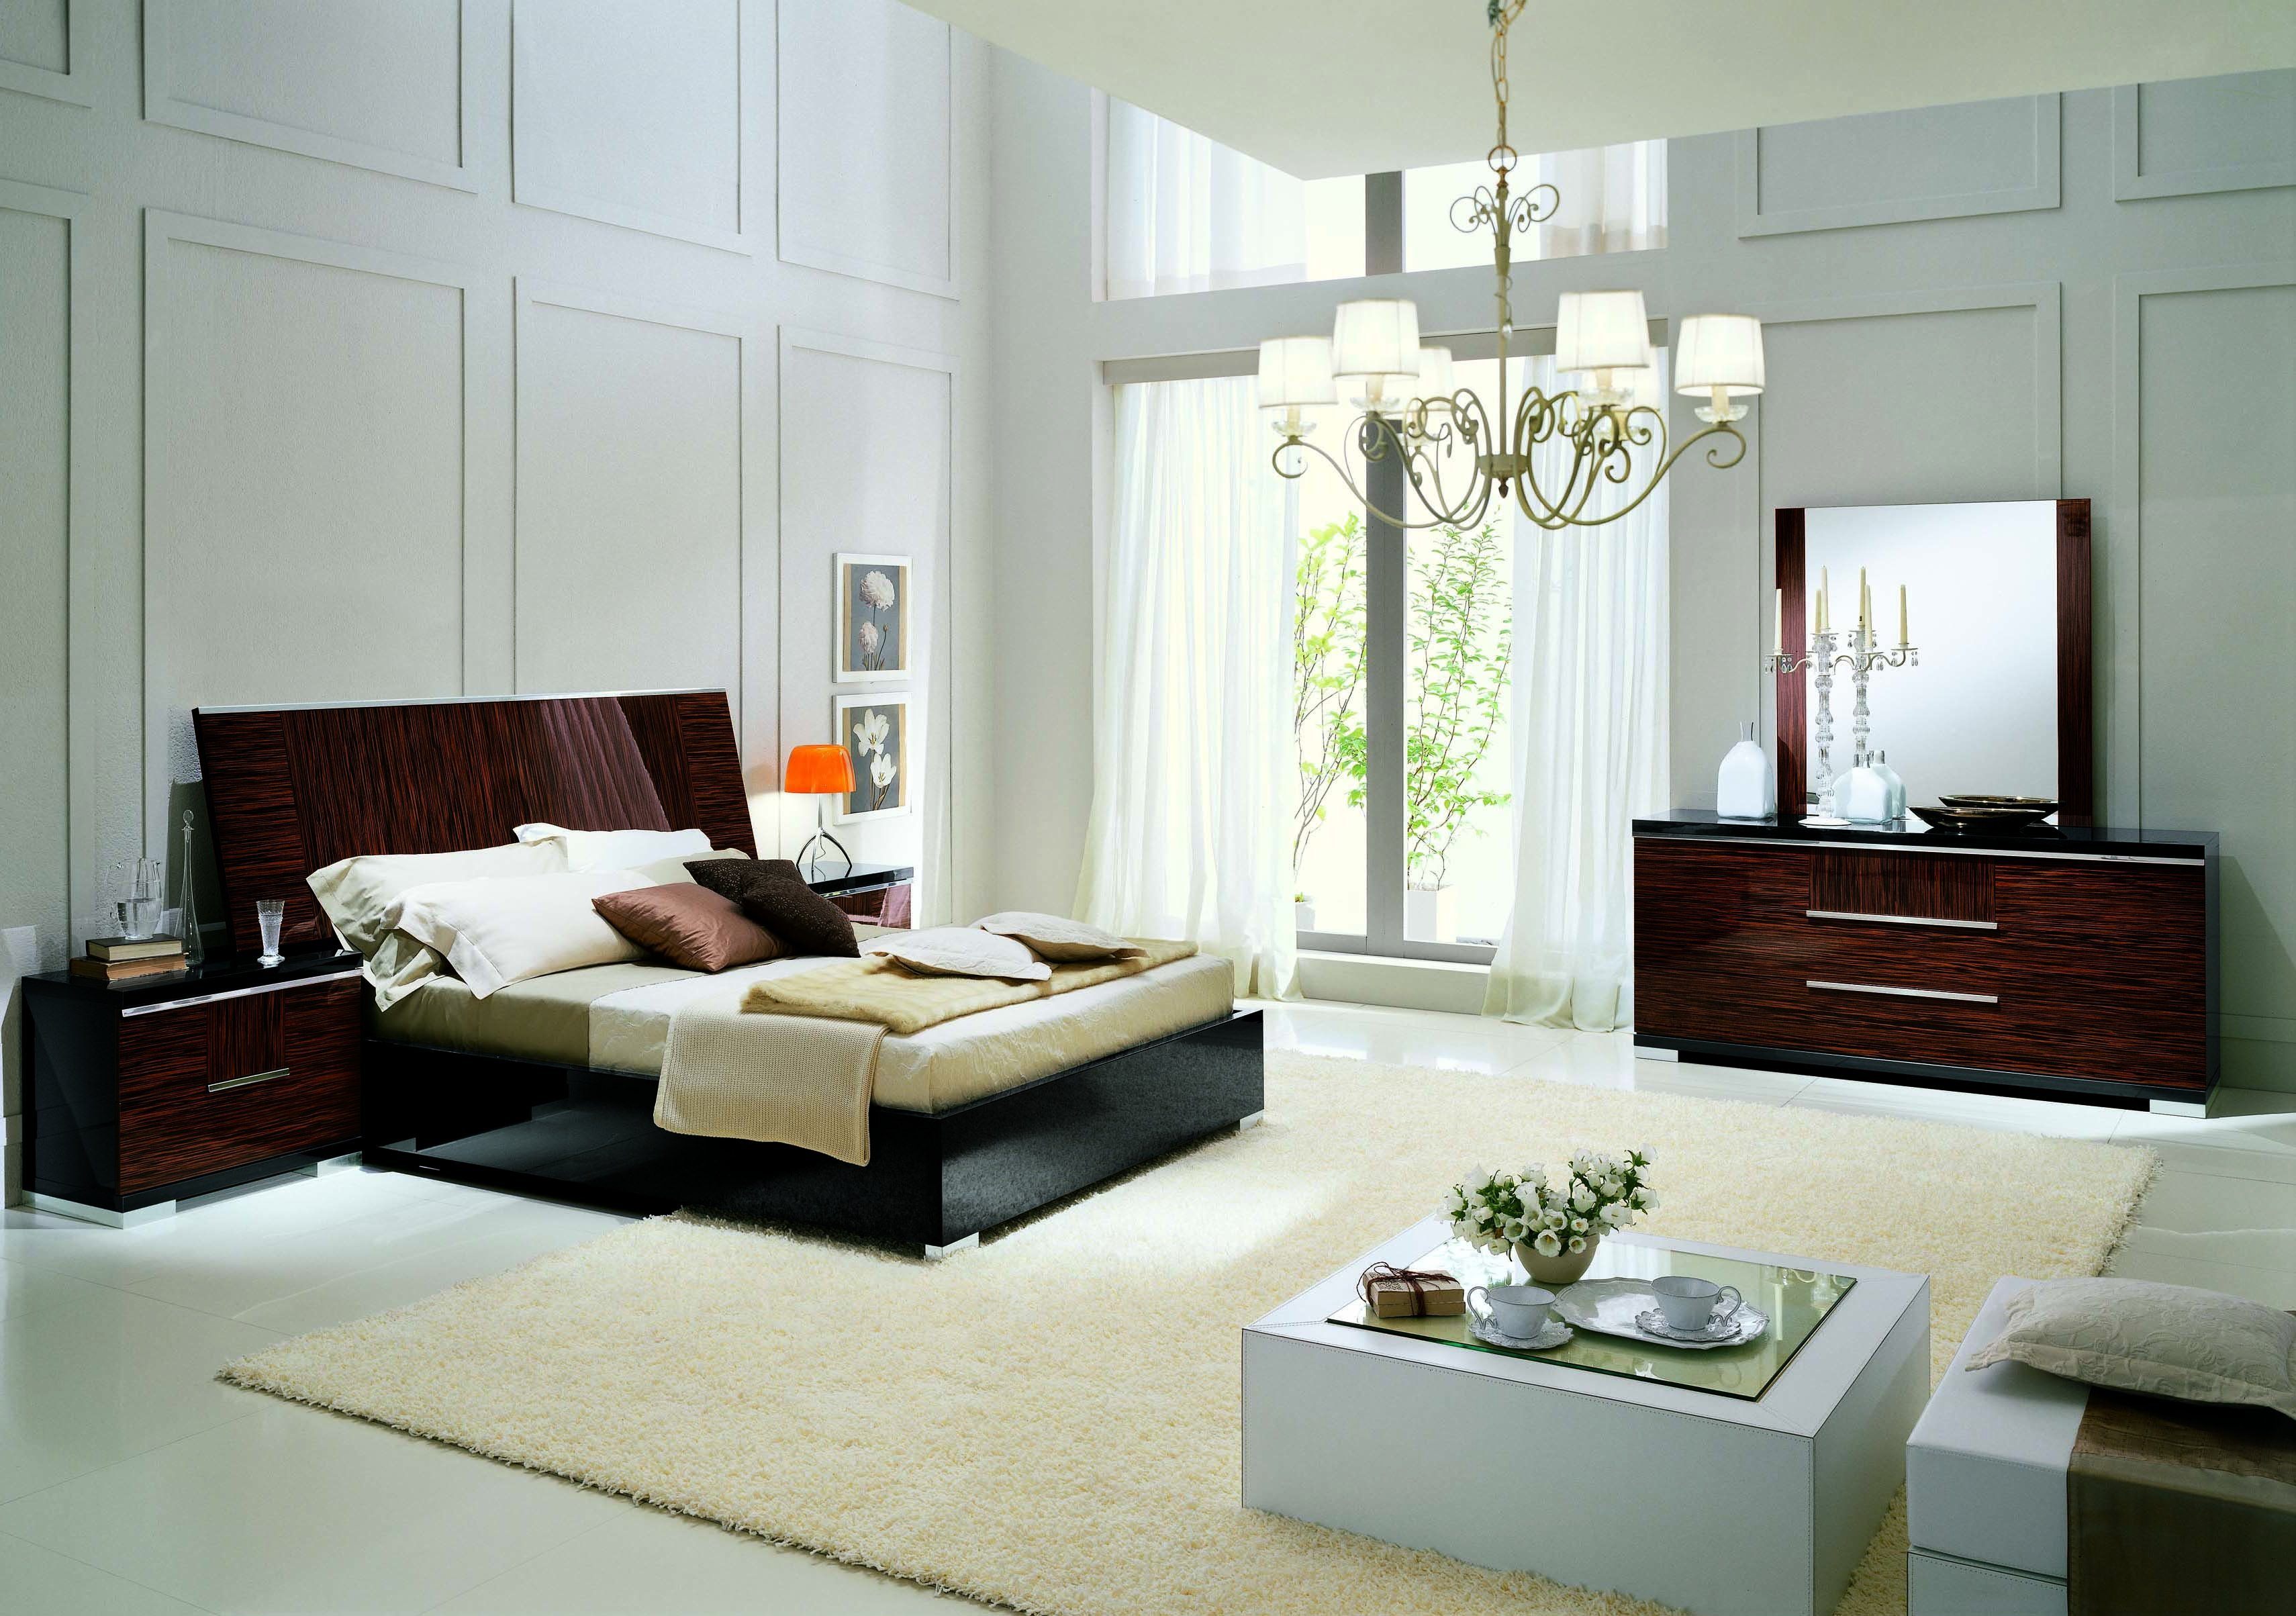 мебель для спальни в современном стиле италия